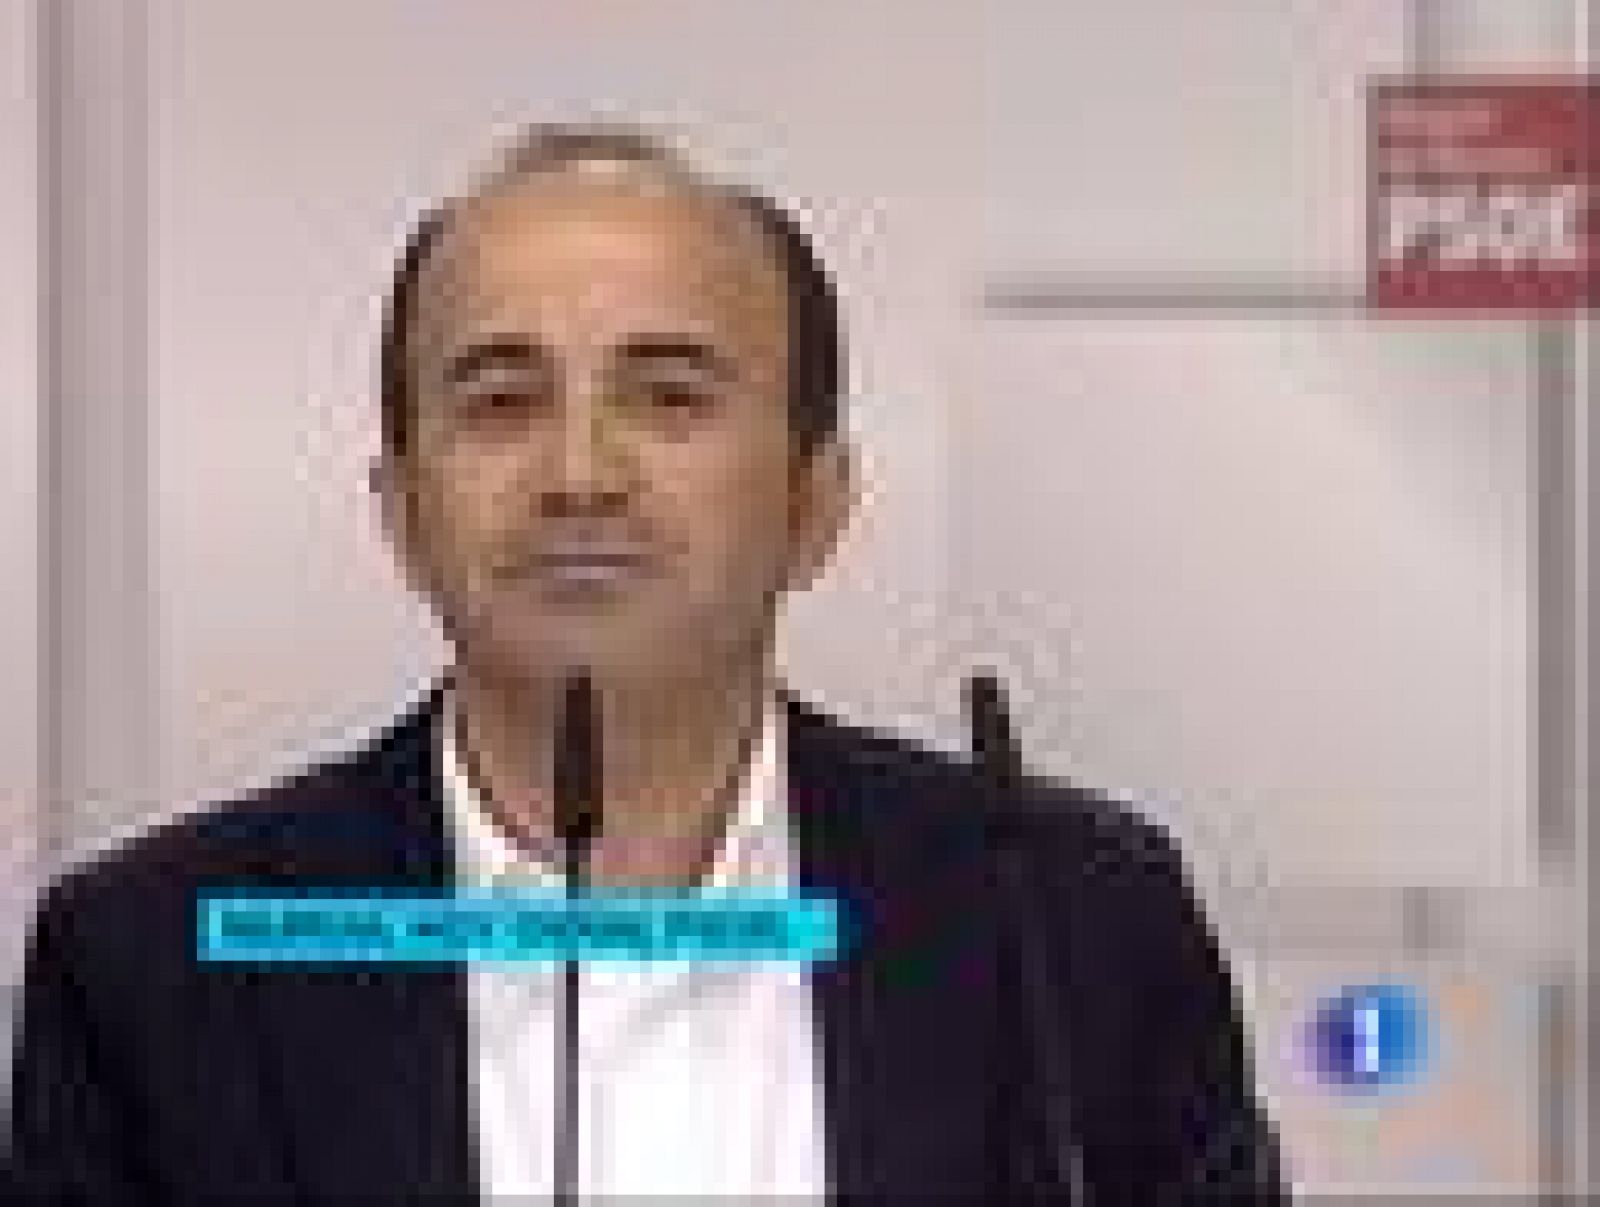 Zapatero: "El PP tendrá ahora que ponerse a trabajar en un proyecto"